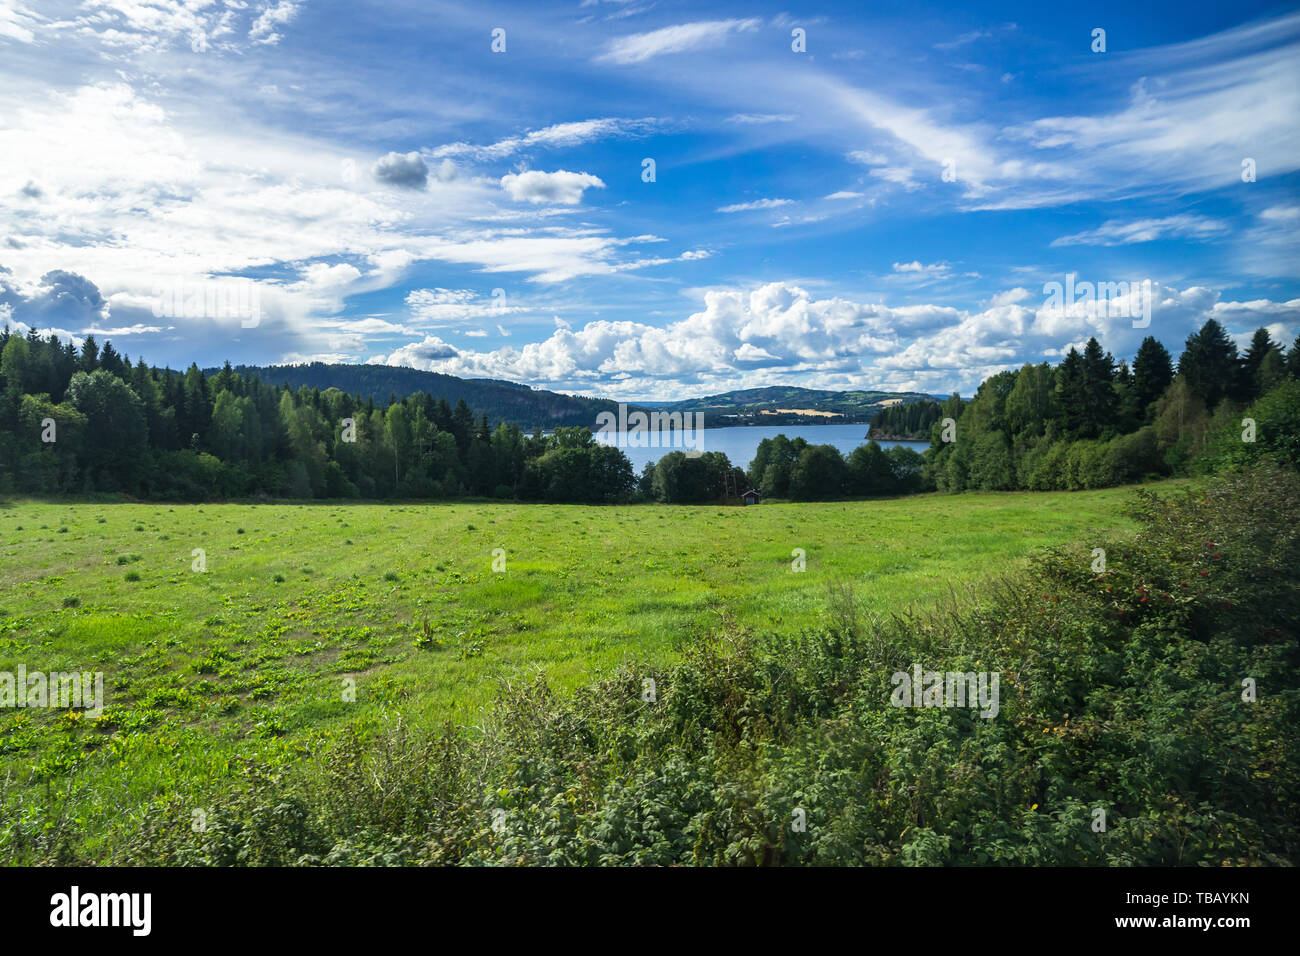 El paisaje noruego en el condado de Hedmark durante el verano cerca del lago Mjosa, vistos desde el tren escénico conexión de Oslo a Trondheim Foto de stock